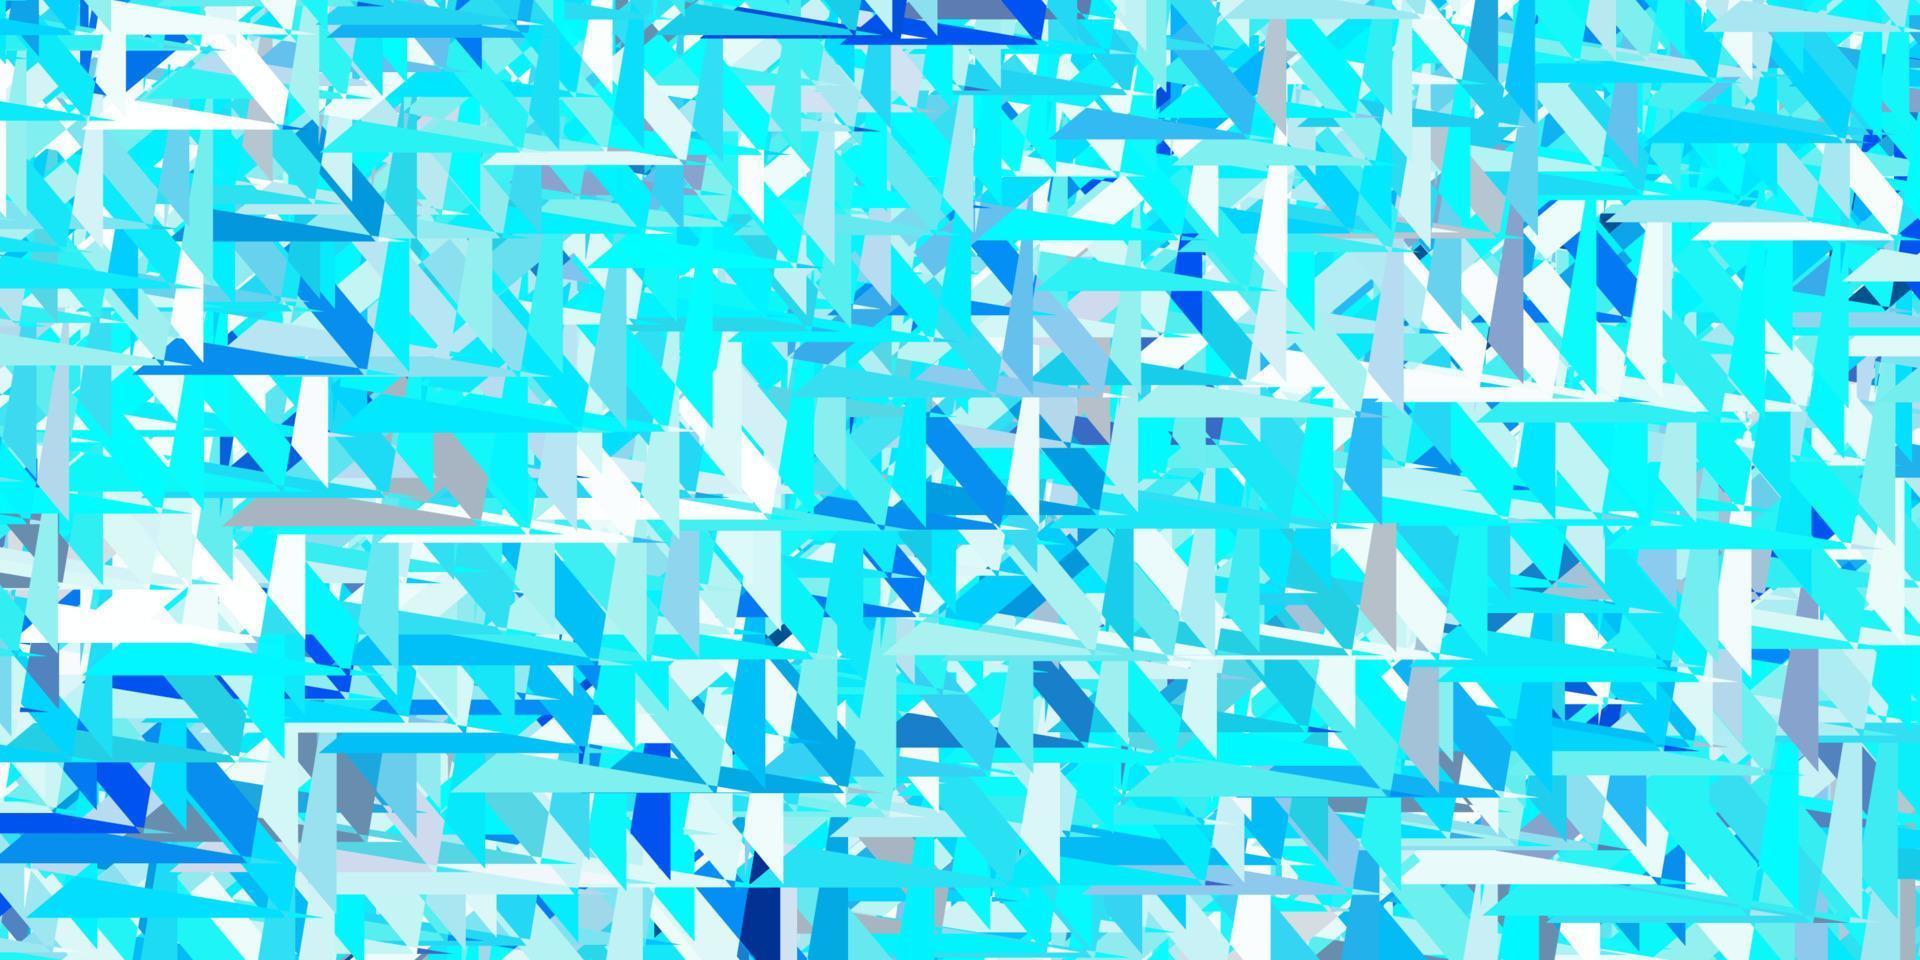 padrão de vetor azul claro com formas poligonais.